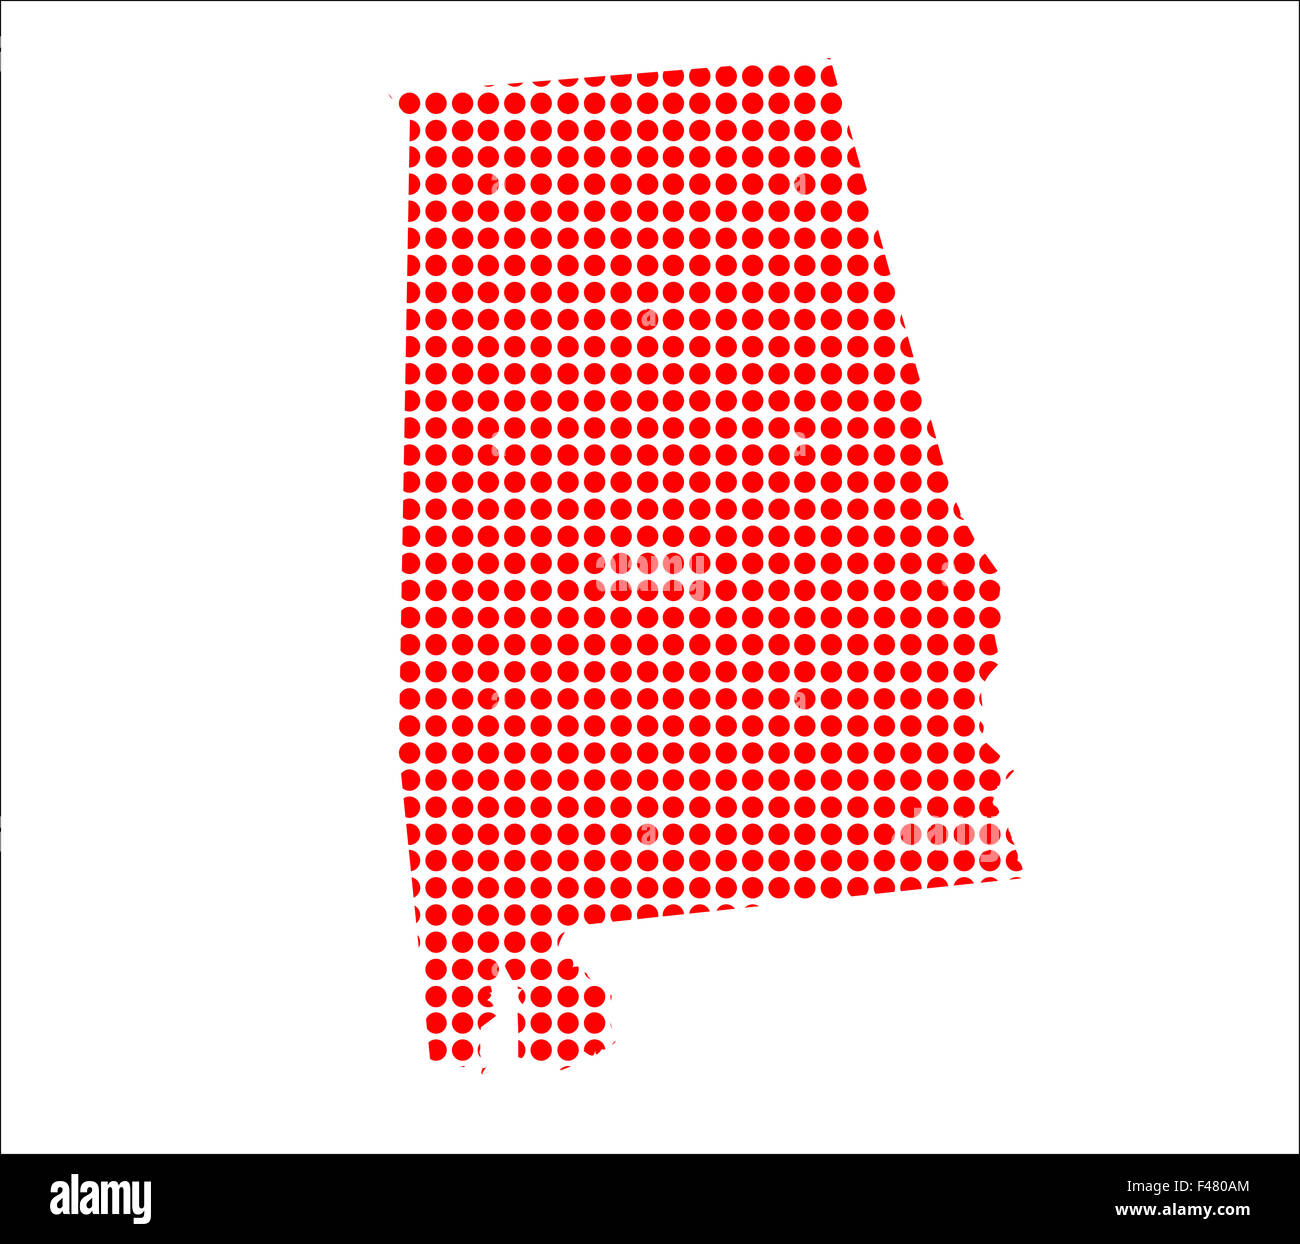 Une carte de l'état de l'Alabama, créé à partir d'une série de points rouges sur fond blanc Banque D'Images